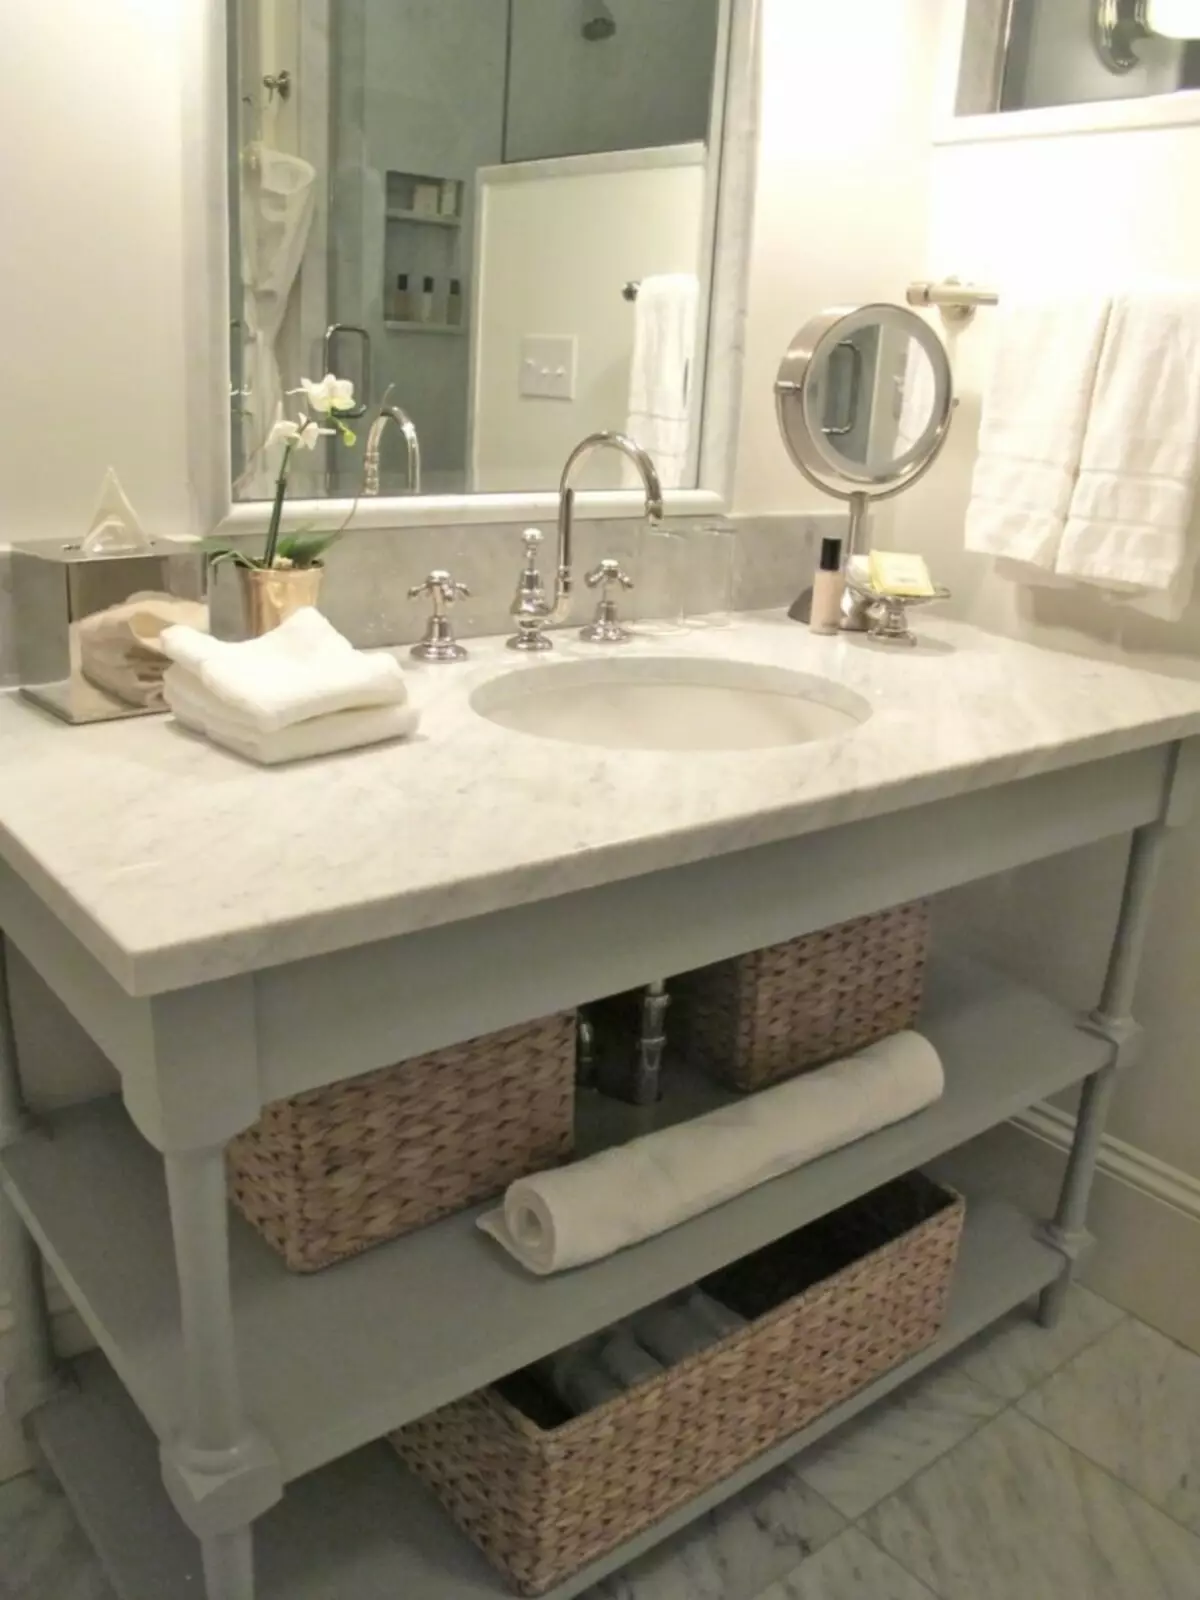 Soportes de baño: mesas de baño de variedades, descripción general de la marca IKEA y otros, soportes de madera y otros 10150_14